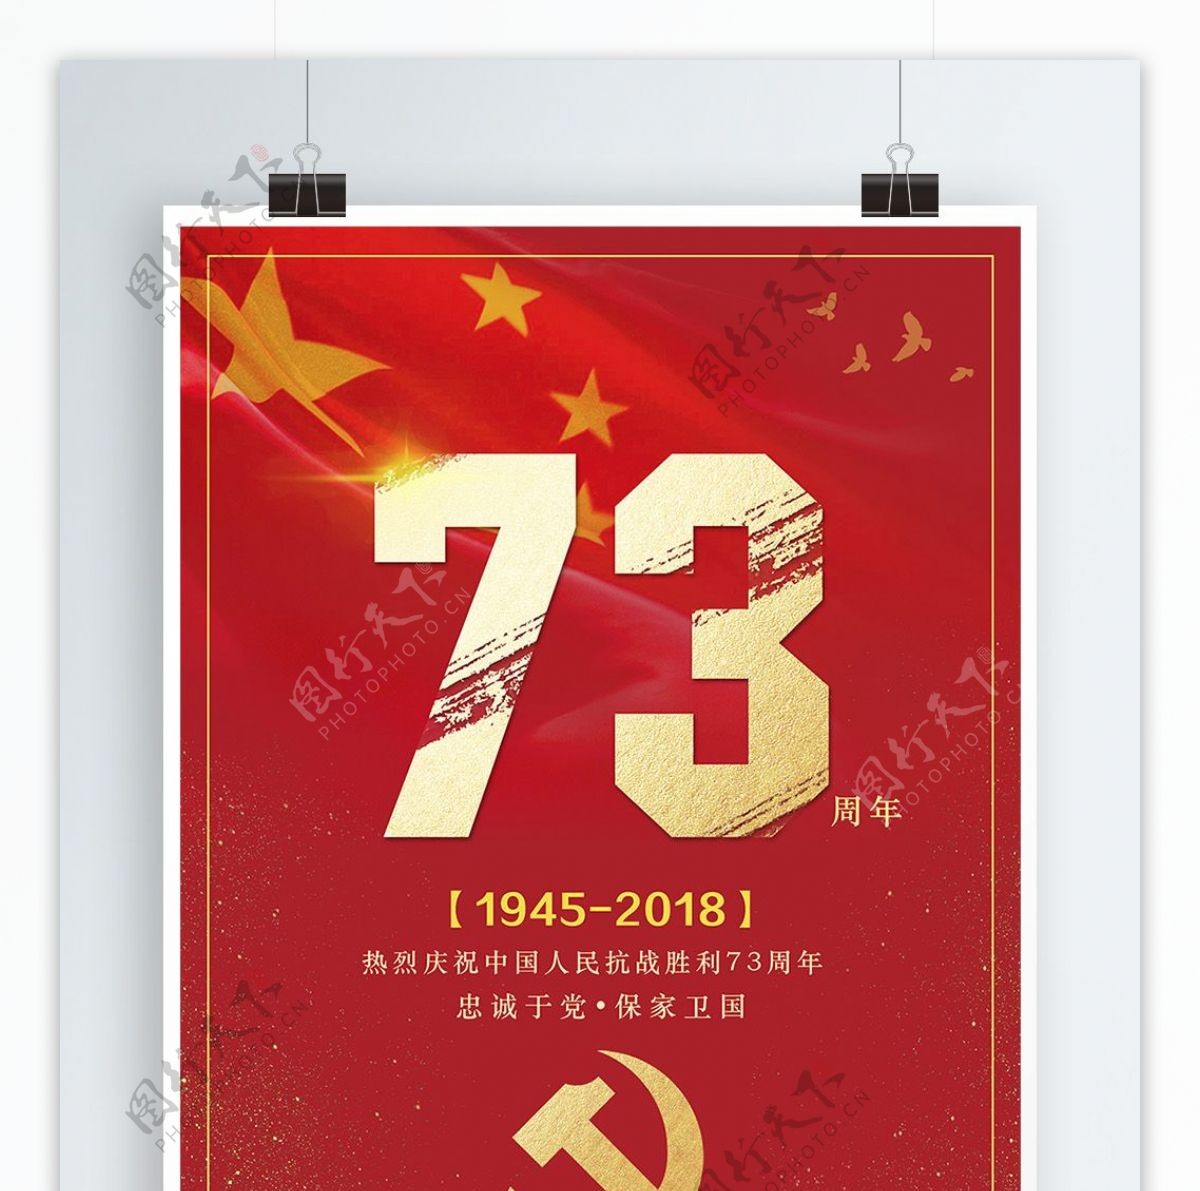 简约大气中国人民抗战胜利73周年